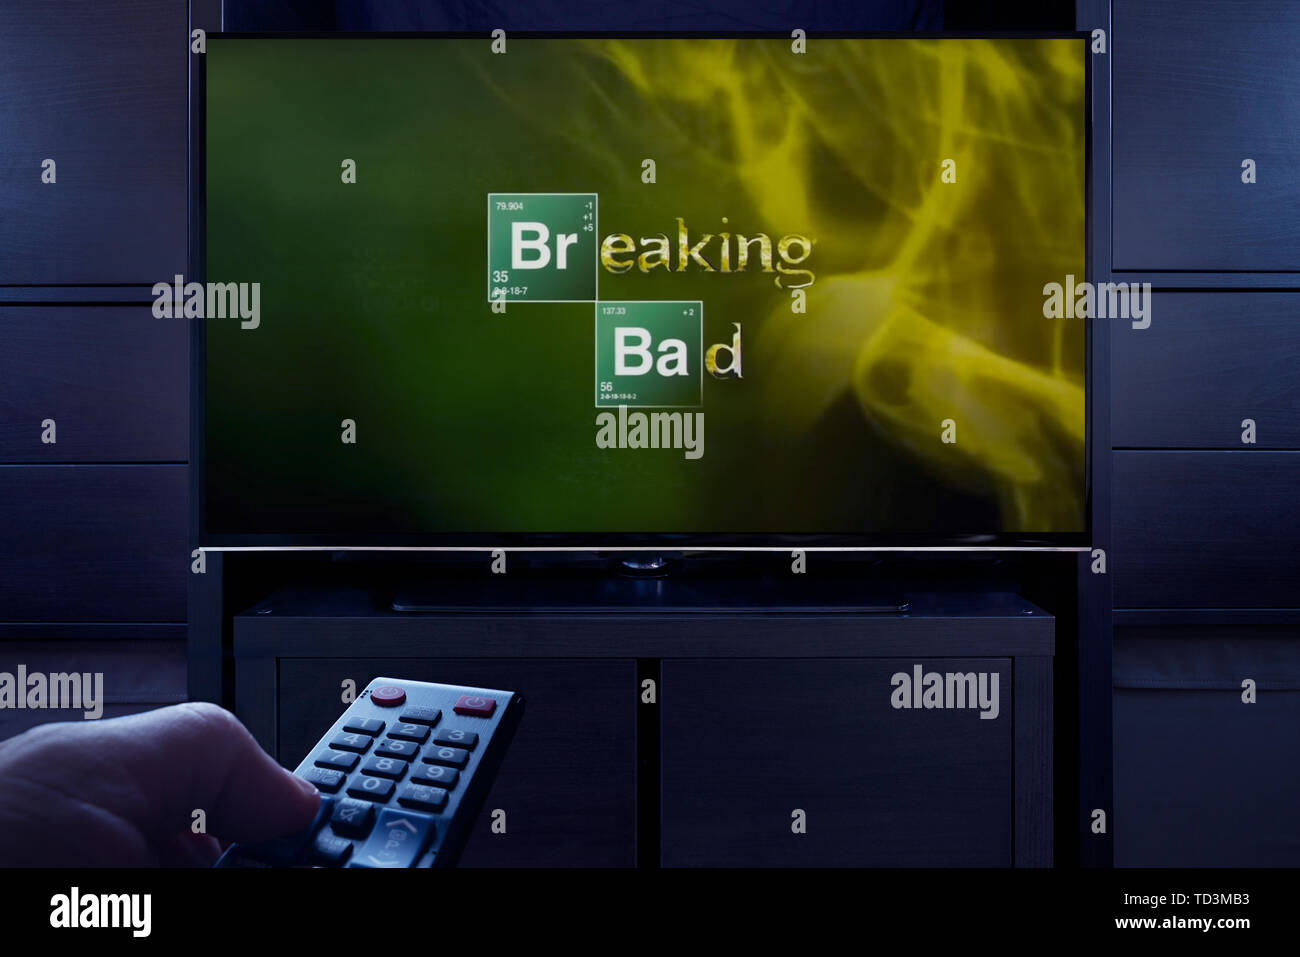 Un homme d'un points TV remote à la télévision qui affiche l'écran de titre principal de Breaking Bad (usage éditorial uniquement). Banque D'Images